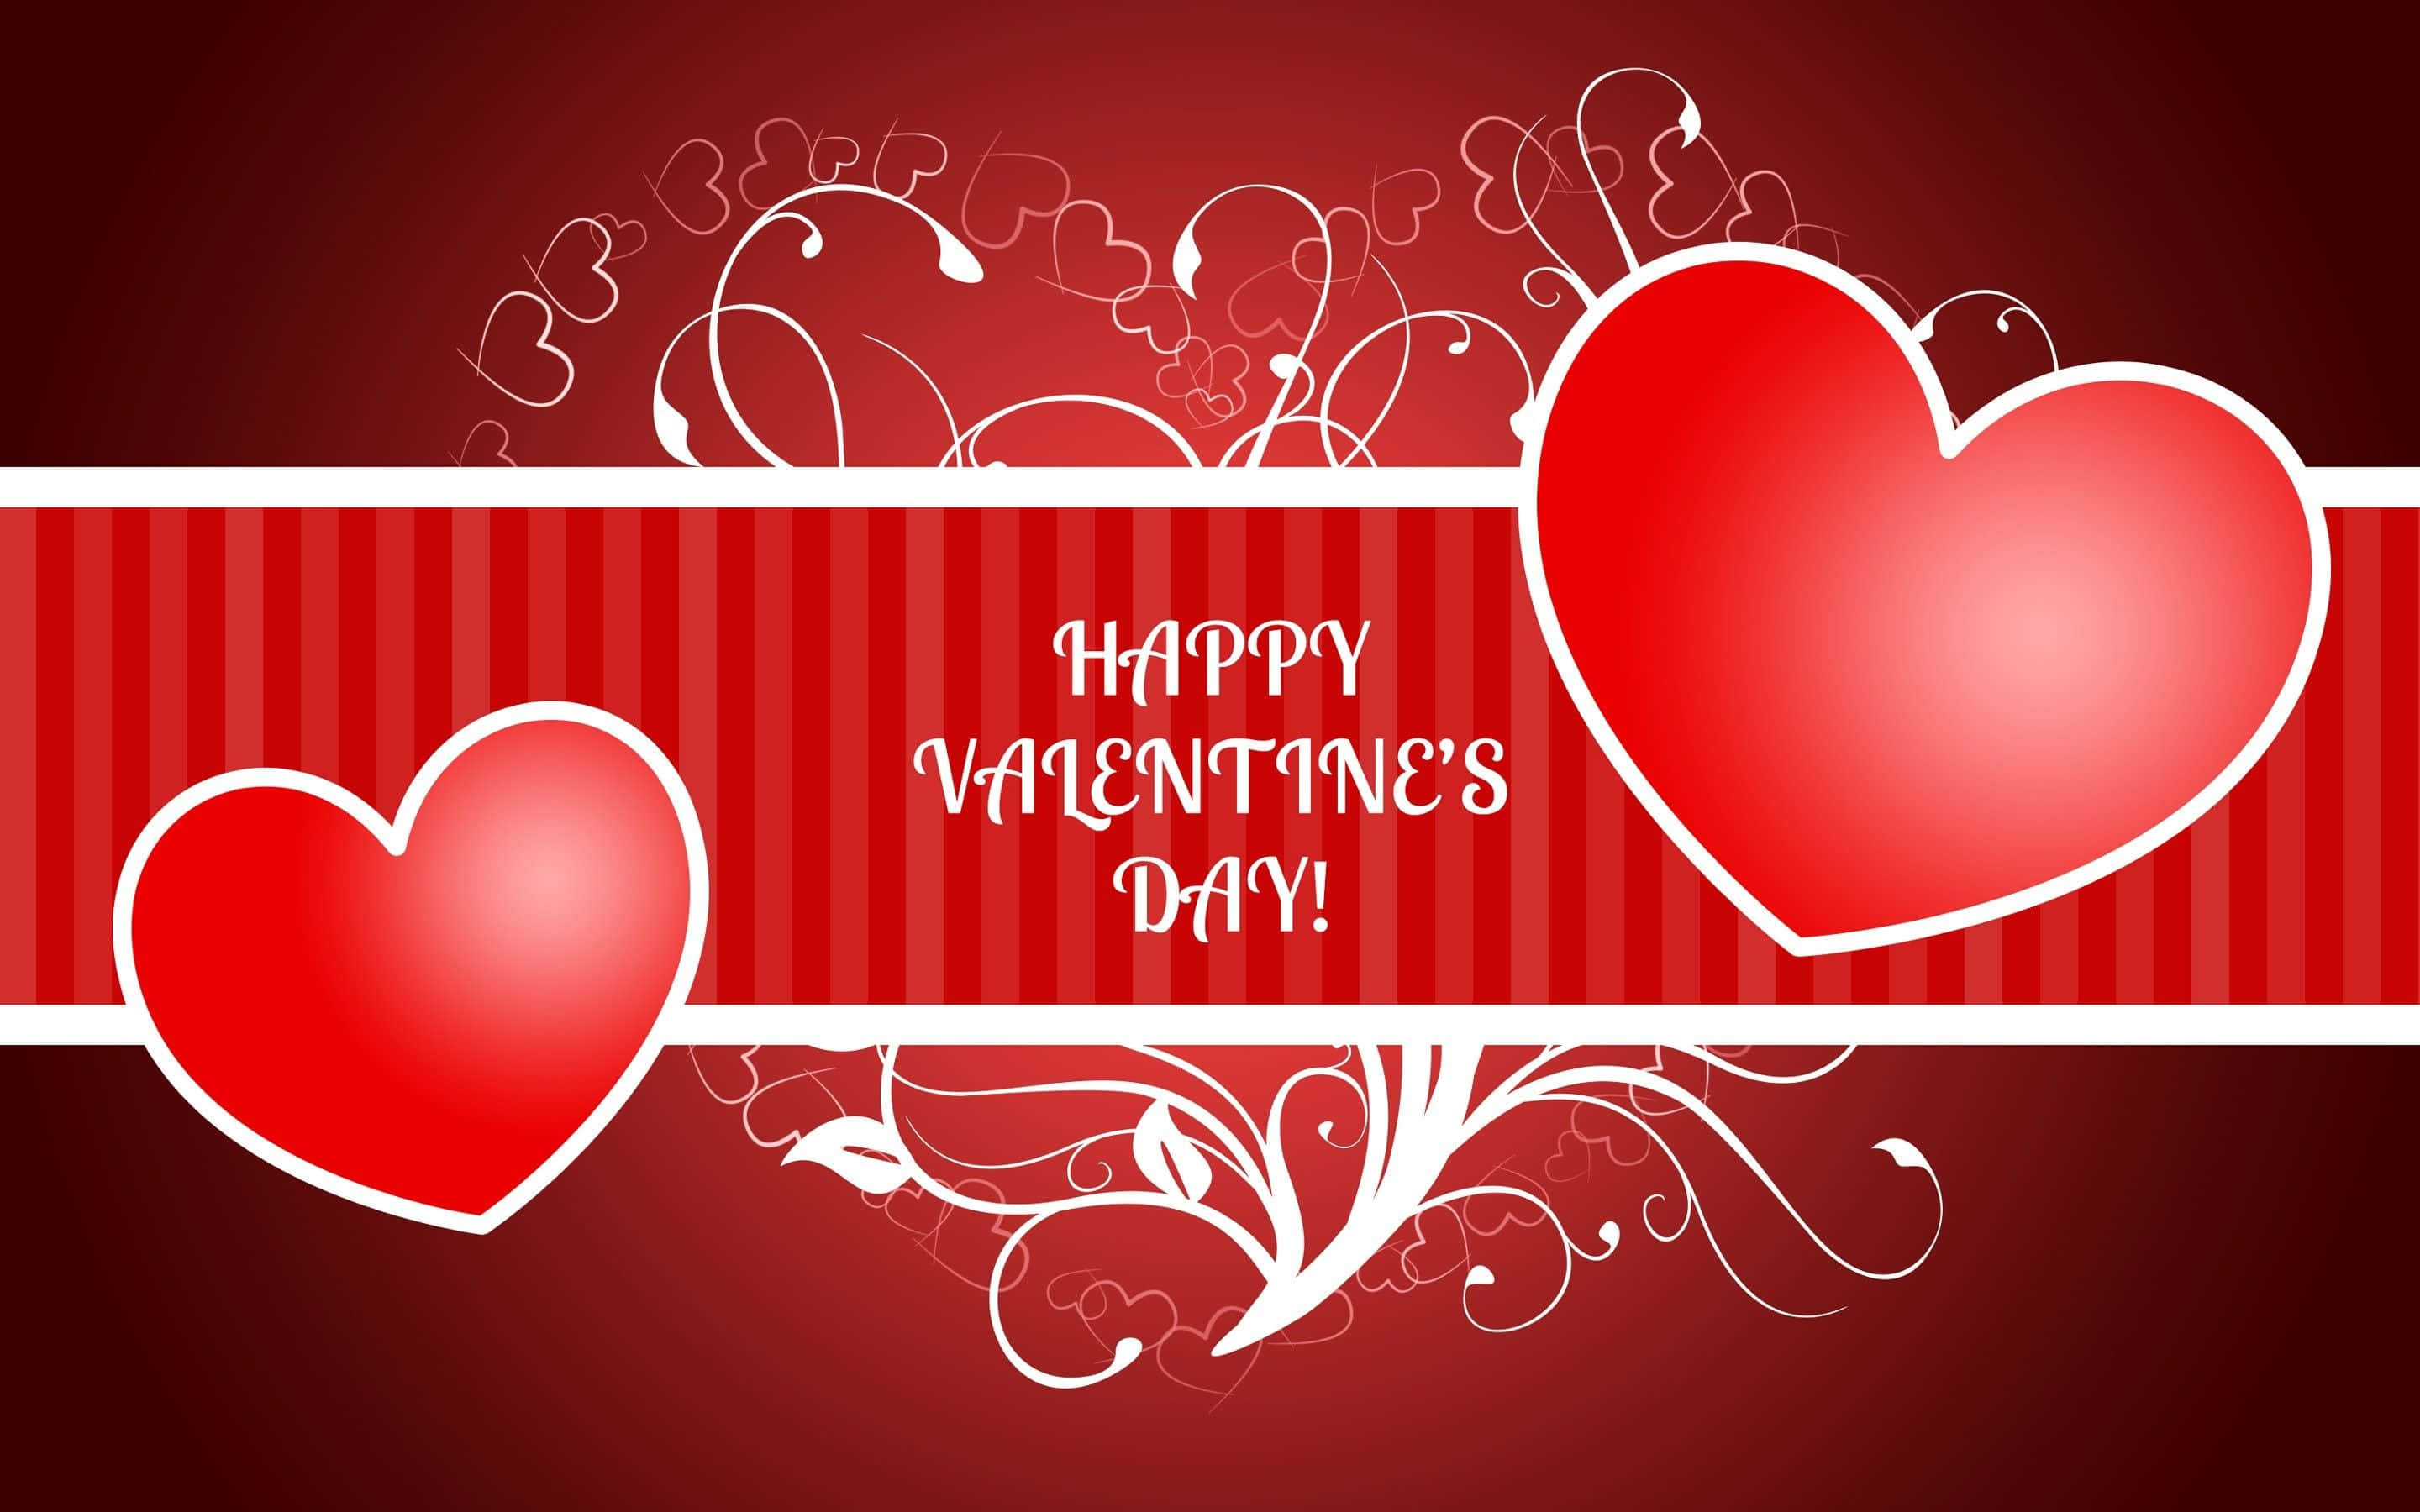 Celebrael Amor En El Día De San Valentín Con Este Hermoso Fondo.